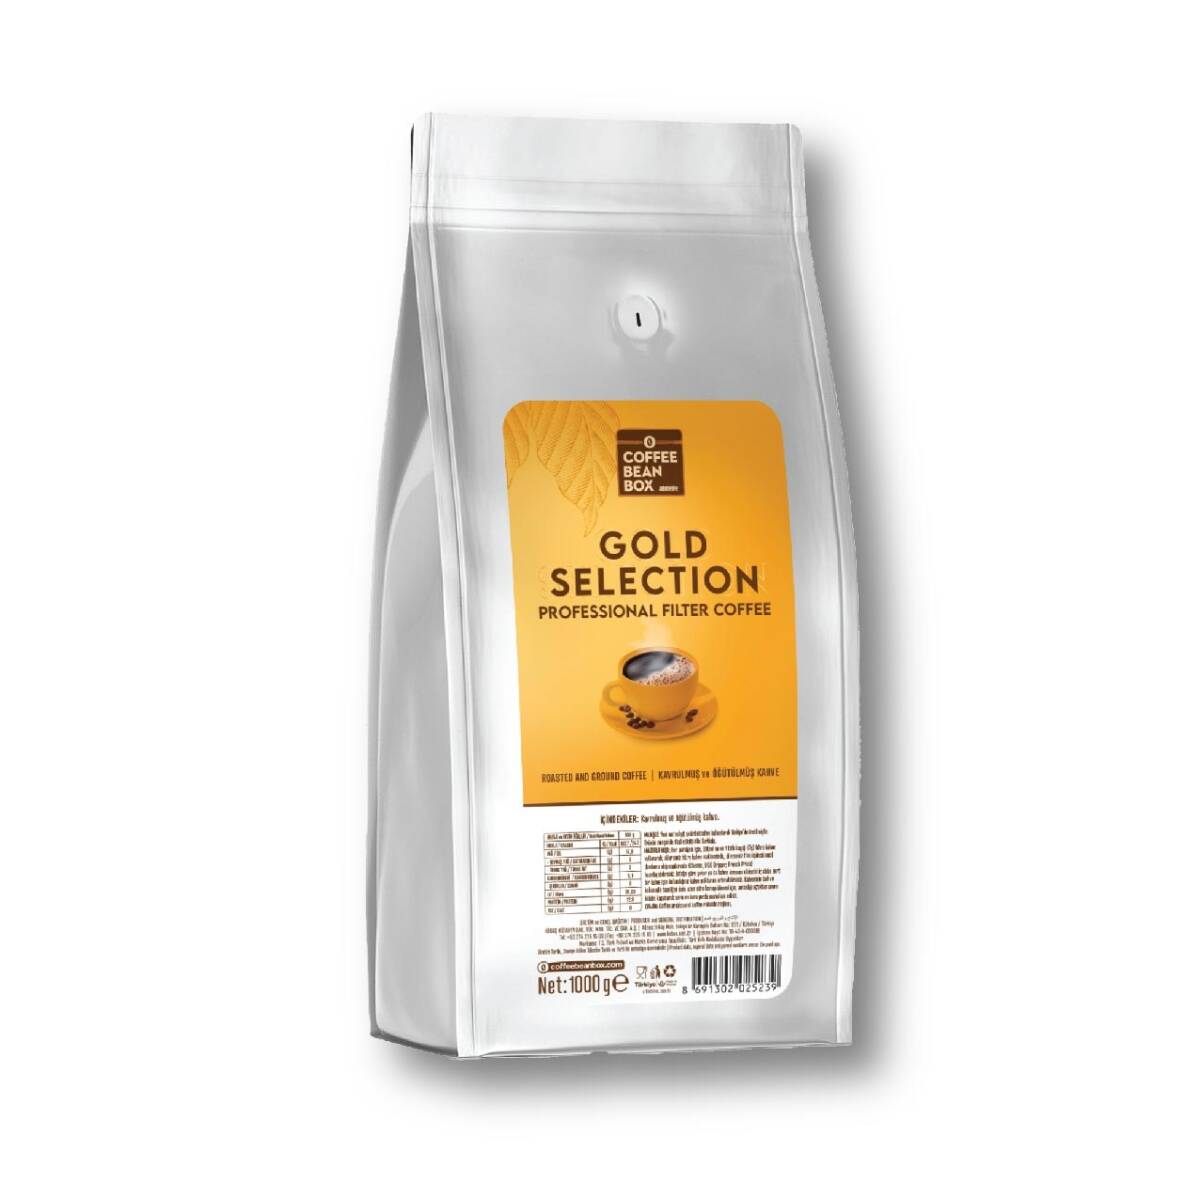 Coffee Bean Box Altıntelve Selection Blend Öğütülmüş Filtre Kahve 1 Kg - 1